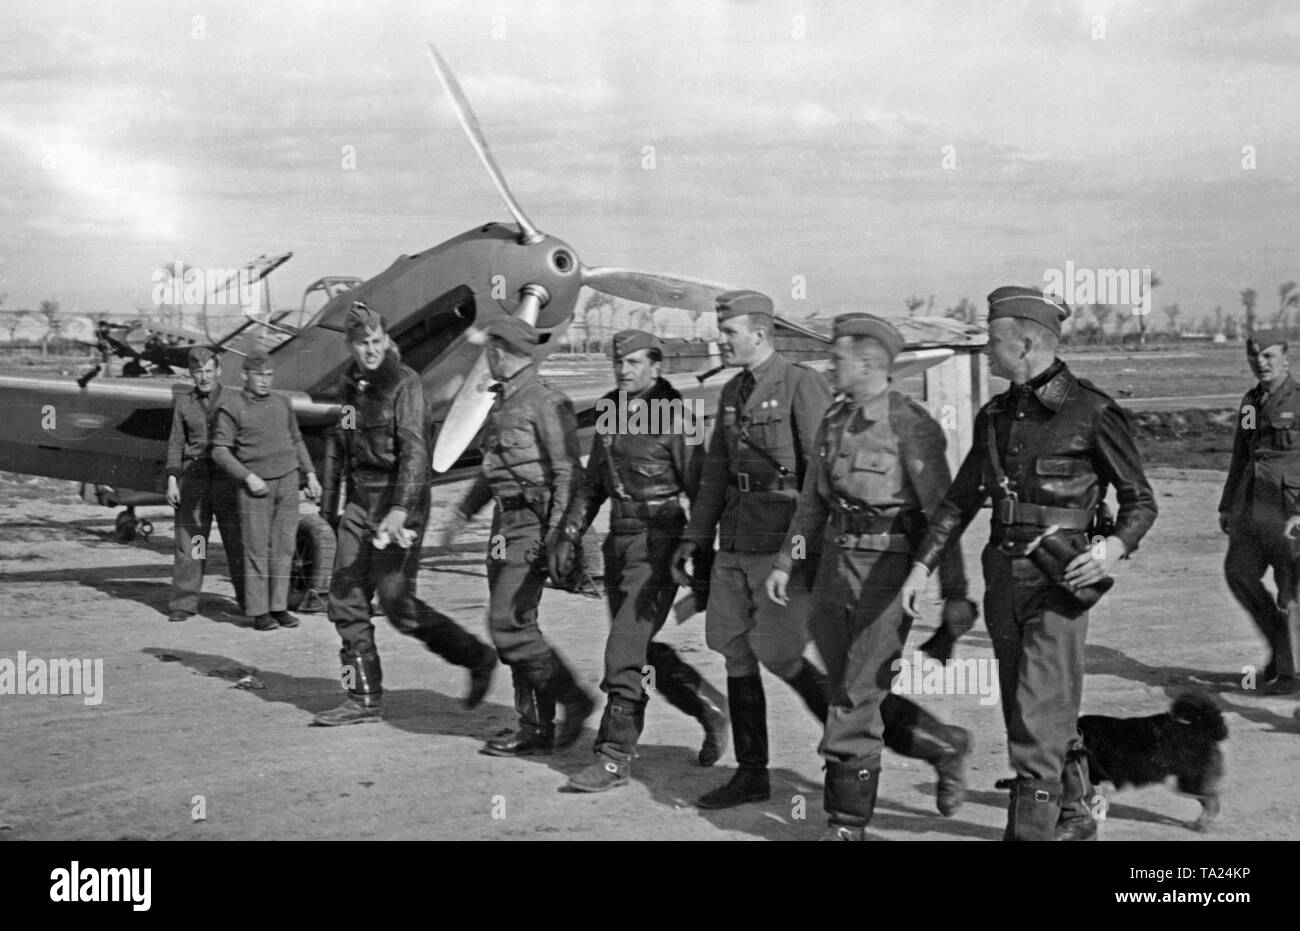 Photo d'un groupe de pilotes de combat de la légion Condor, groupe de combat 88, en marchant à leur prêt-à-utiliser Messerschmitt Bf 109 combattants (à l'arrière-plan) sur un aérodrome en Espagne en 1939. La bouche de la mitrailleuse est visible dans le creux de l'hélice et le cône de. Banque D'Images